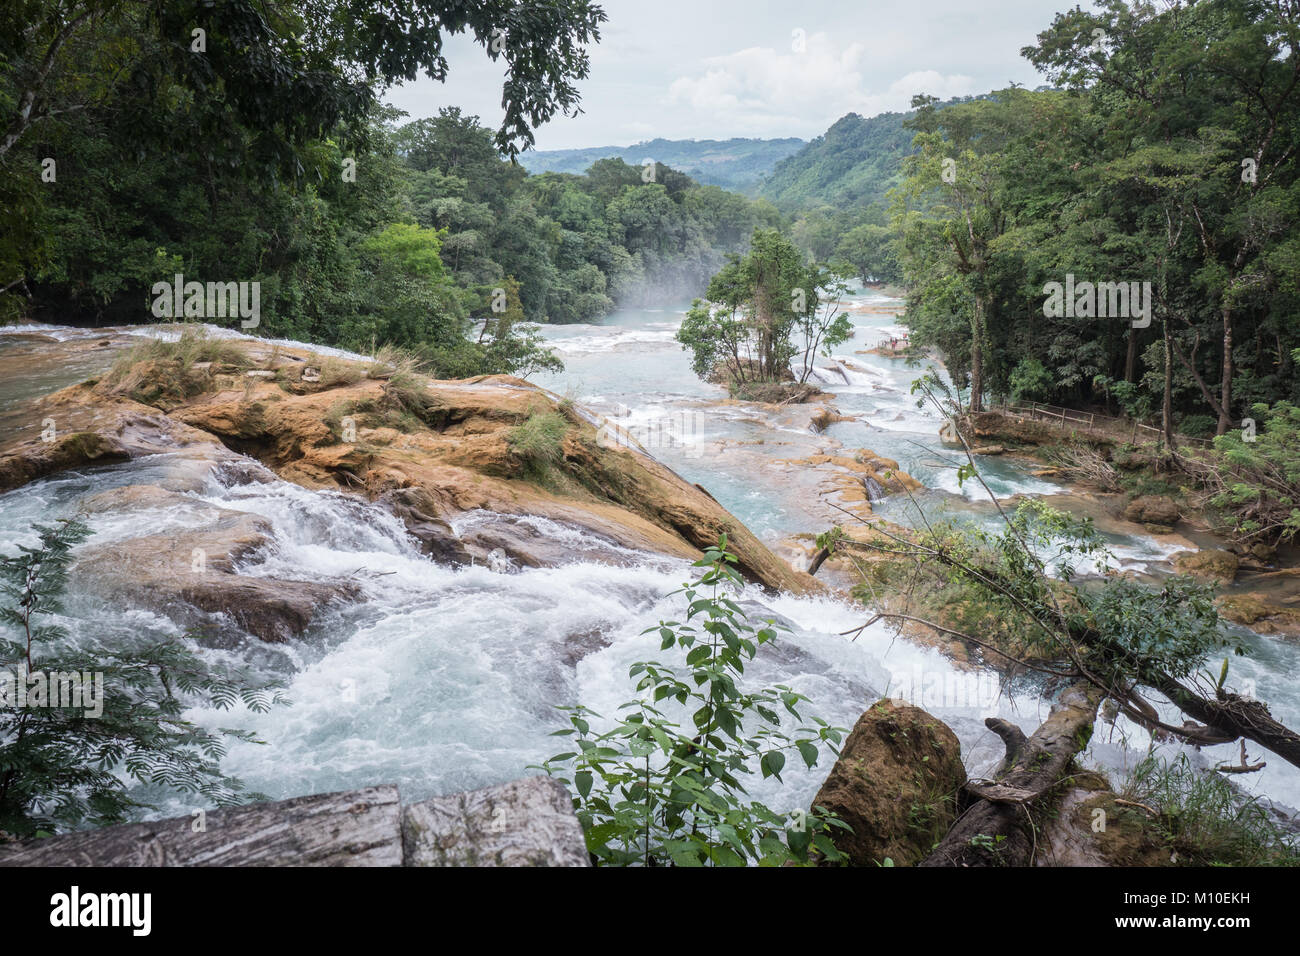 Agua Azul Falls Cascades, Palenque, Mexico Stock Photo